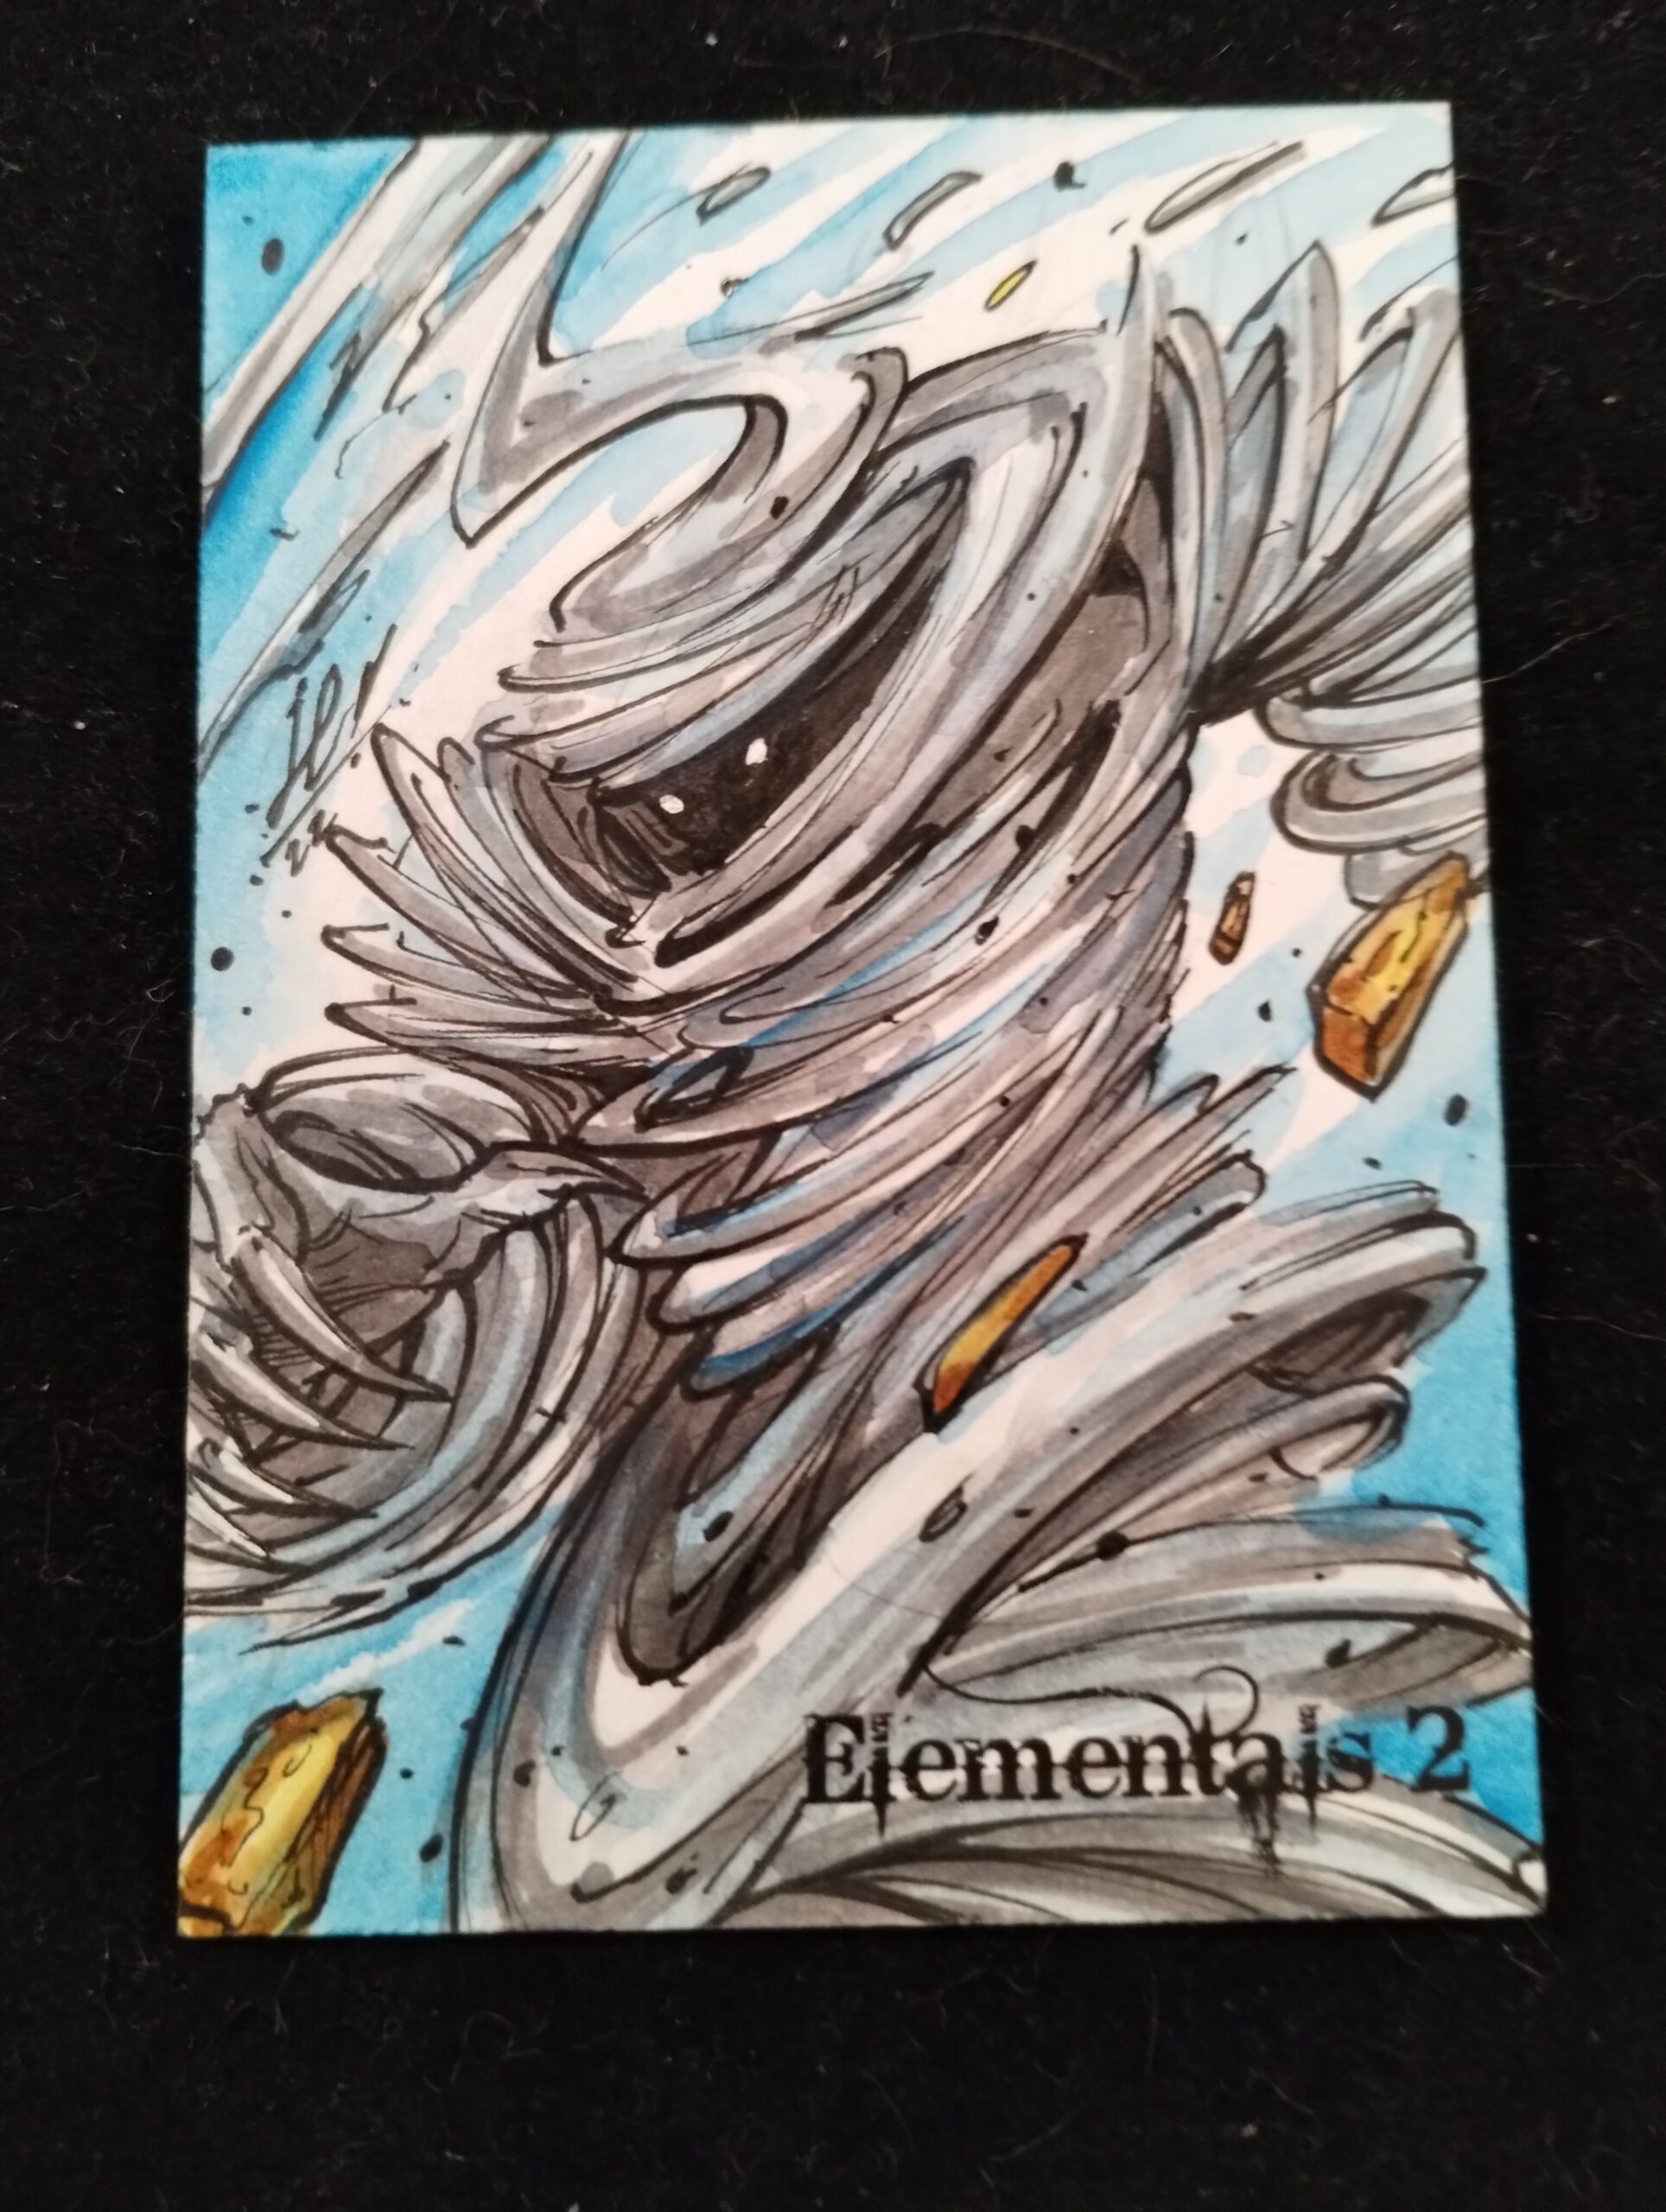 Elementals 2 sketch card by Jose Carlos Sanchez